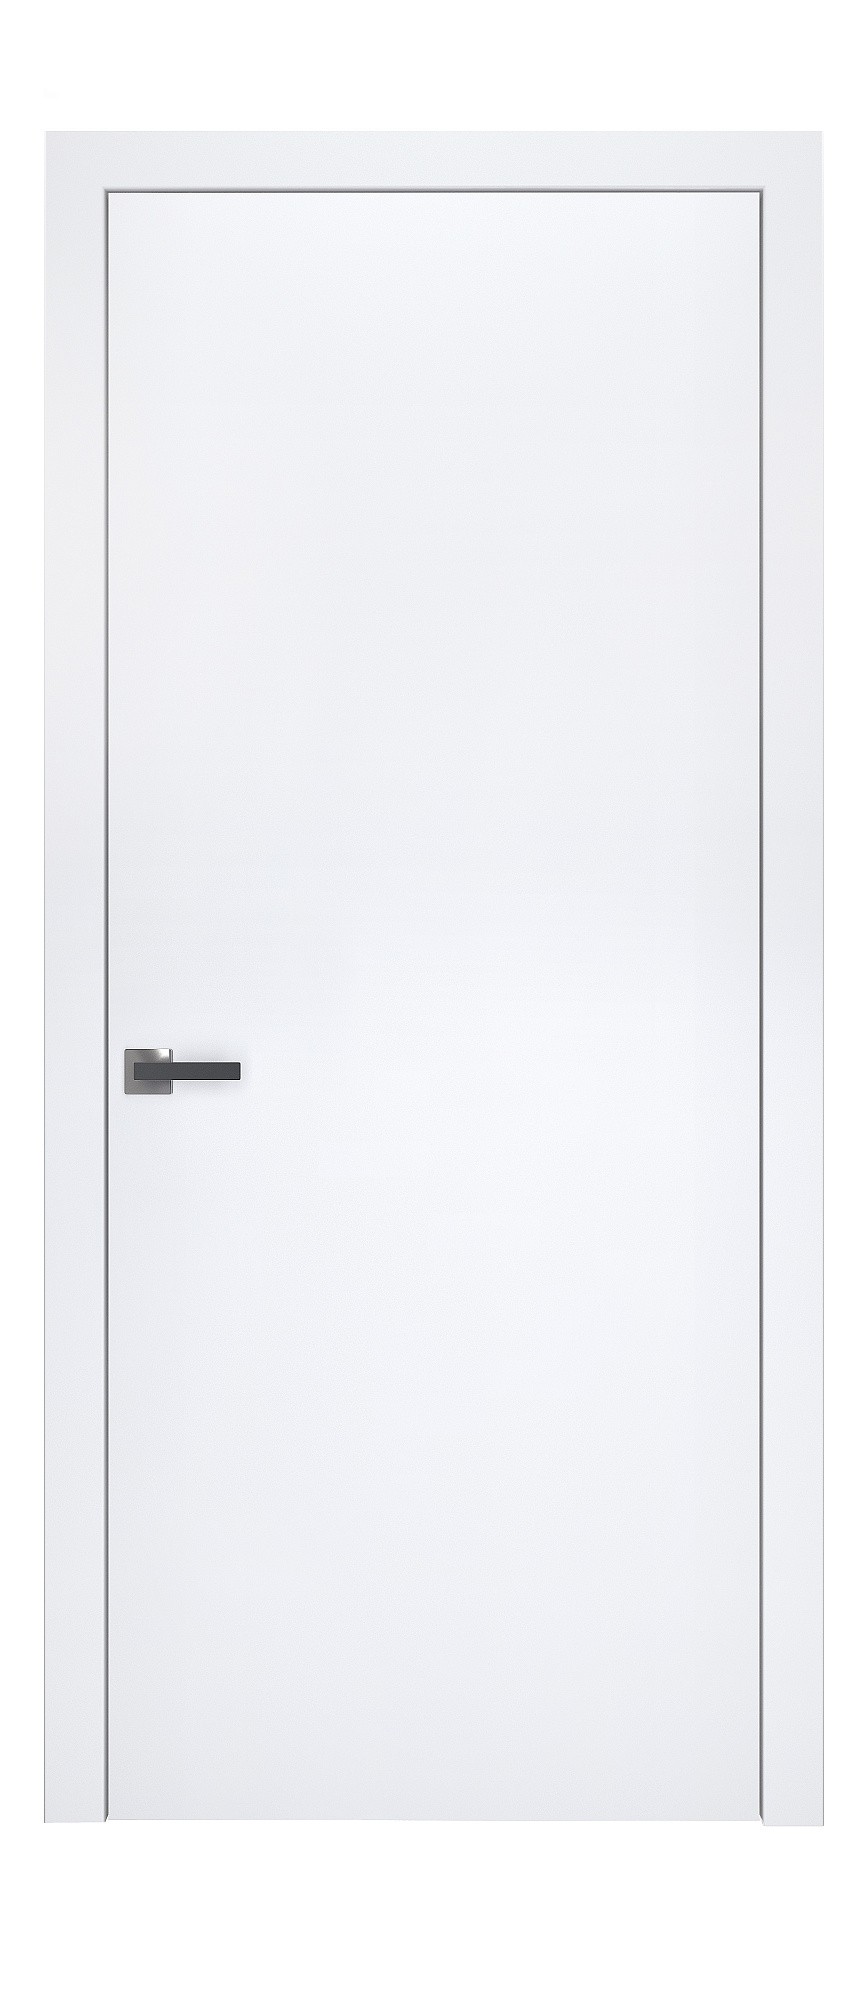 Двері модель 704 Біла Емаль (глуха)